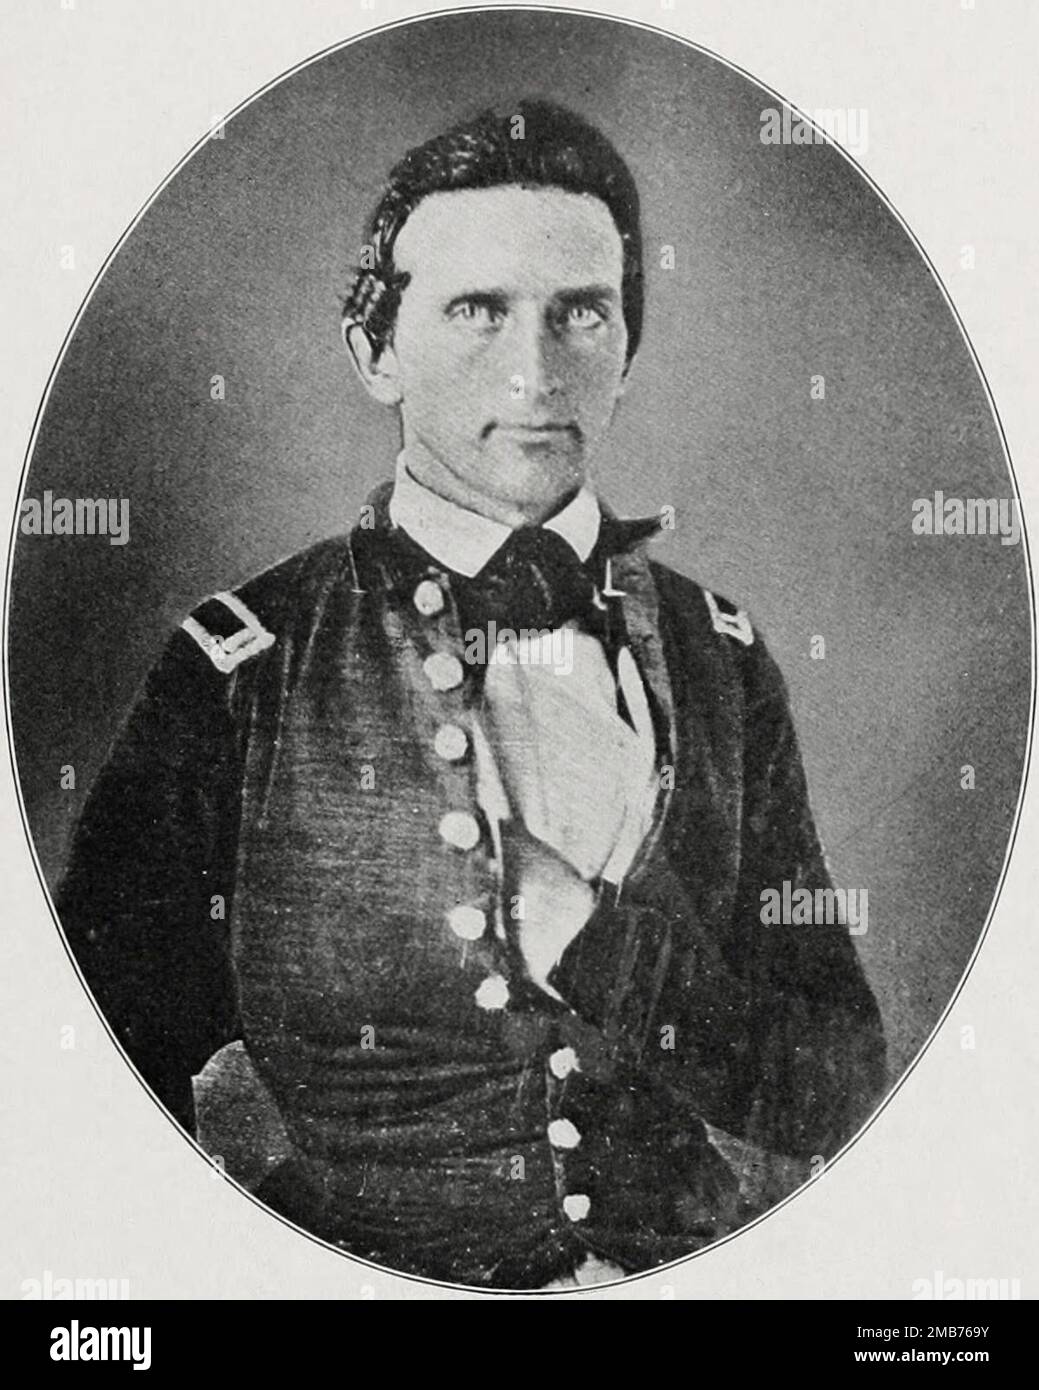 Erster Lieutenant Thomas J. Jackson irgendwann nach dem West Point-Abschluss in den späten 1840er. Er wurde im Amerikanischen Bürgerkrieg unter dem Spitznamen "Stonewall Jackson" zu einer bekannten führenden konföderierten Armee Stockfoto